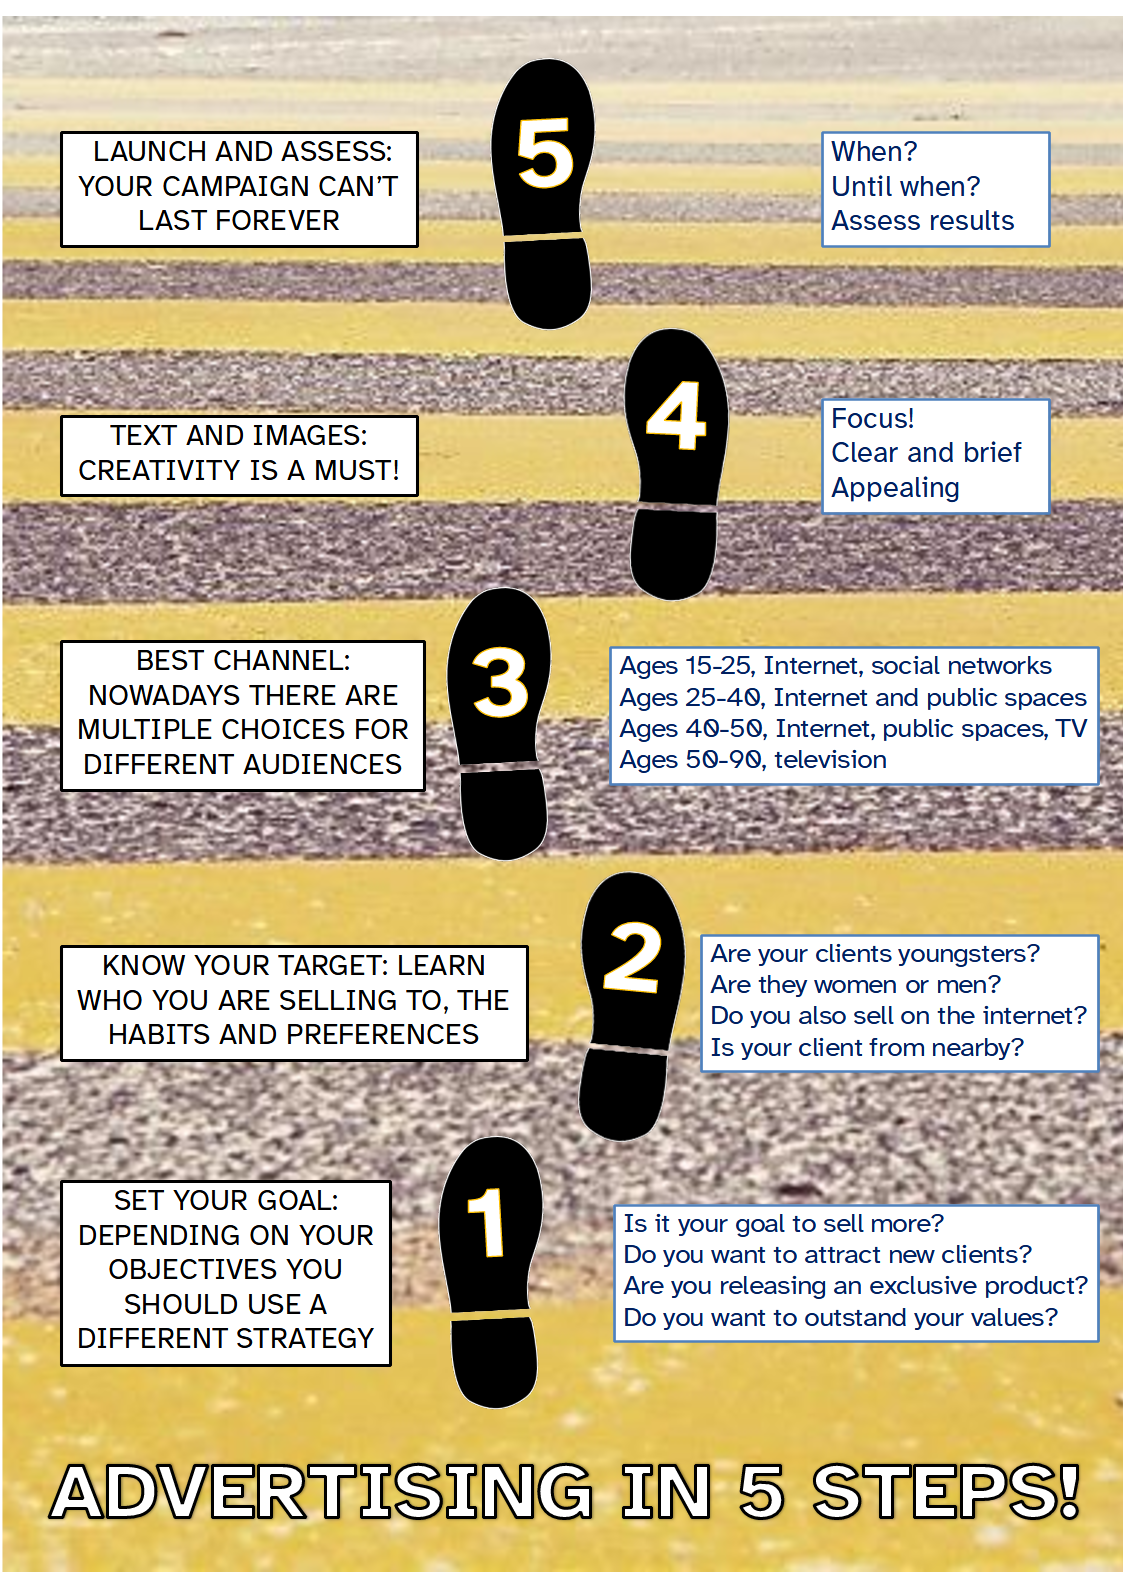 La imagen muestra un paso de cebra sobre el que aparecen cinco huellas de zapato que hacen referencia, a modo de resumen, a los cinco pasos que habría que dar para hacer una campaña publicitaria.